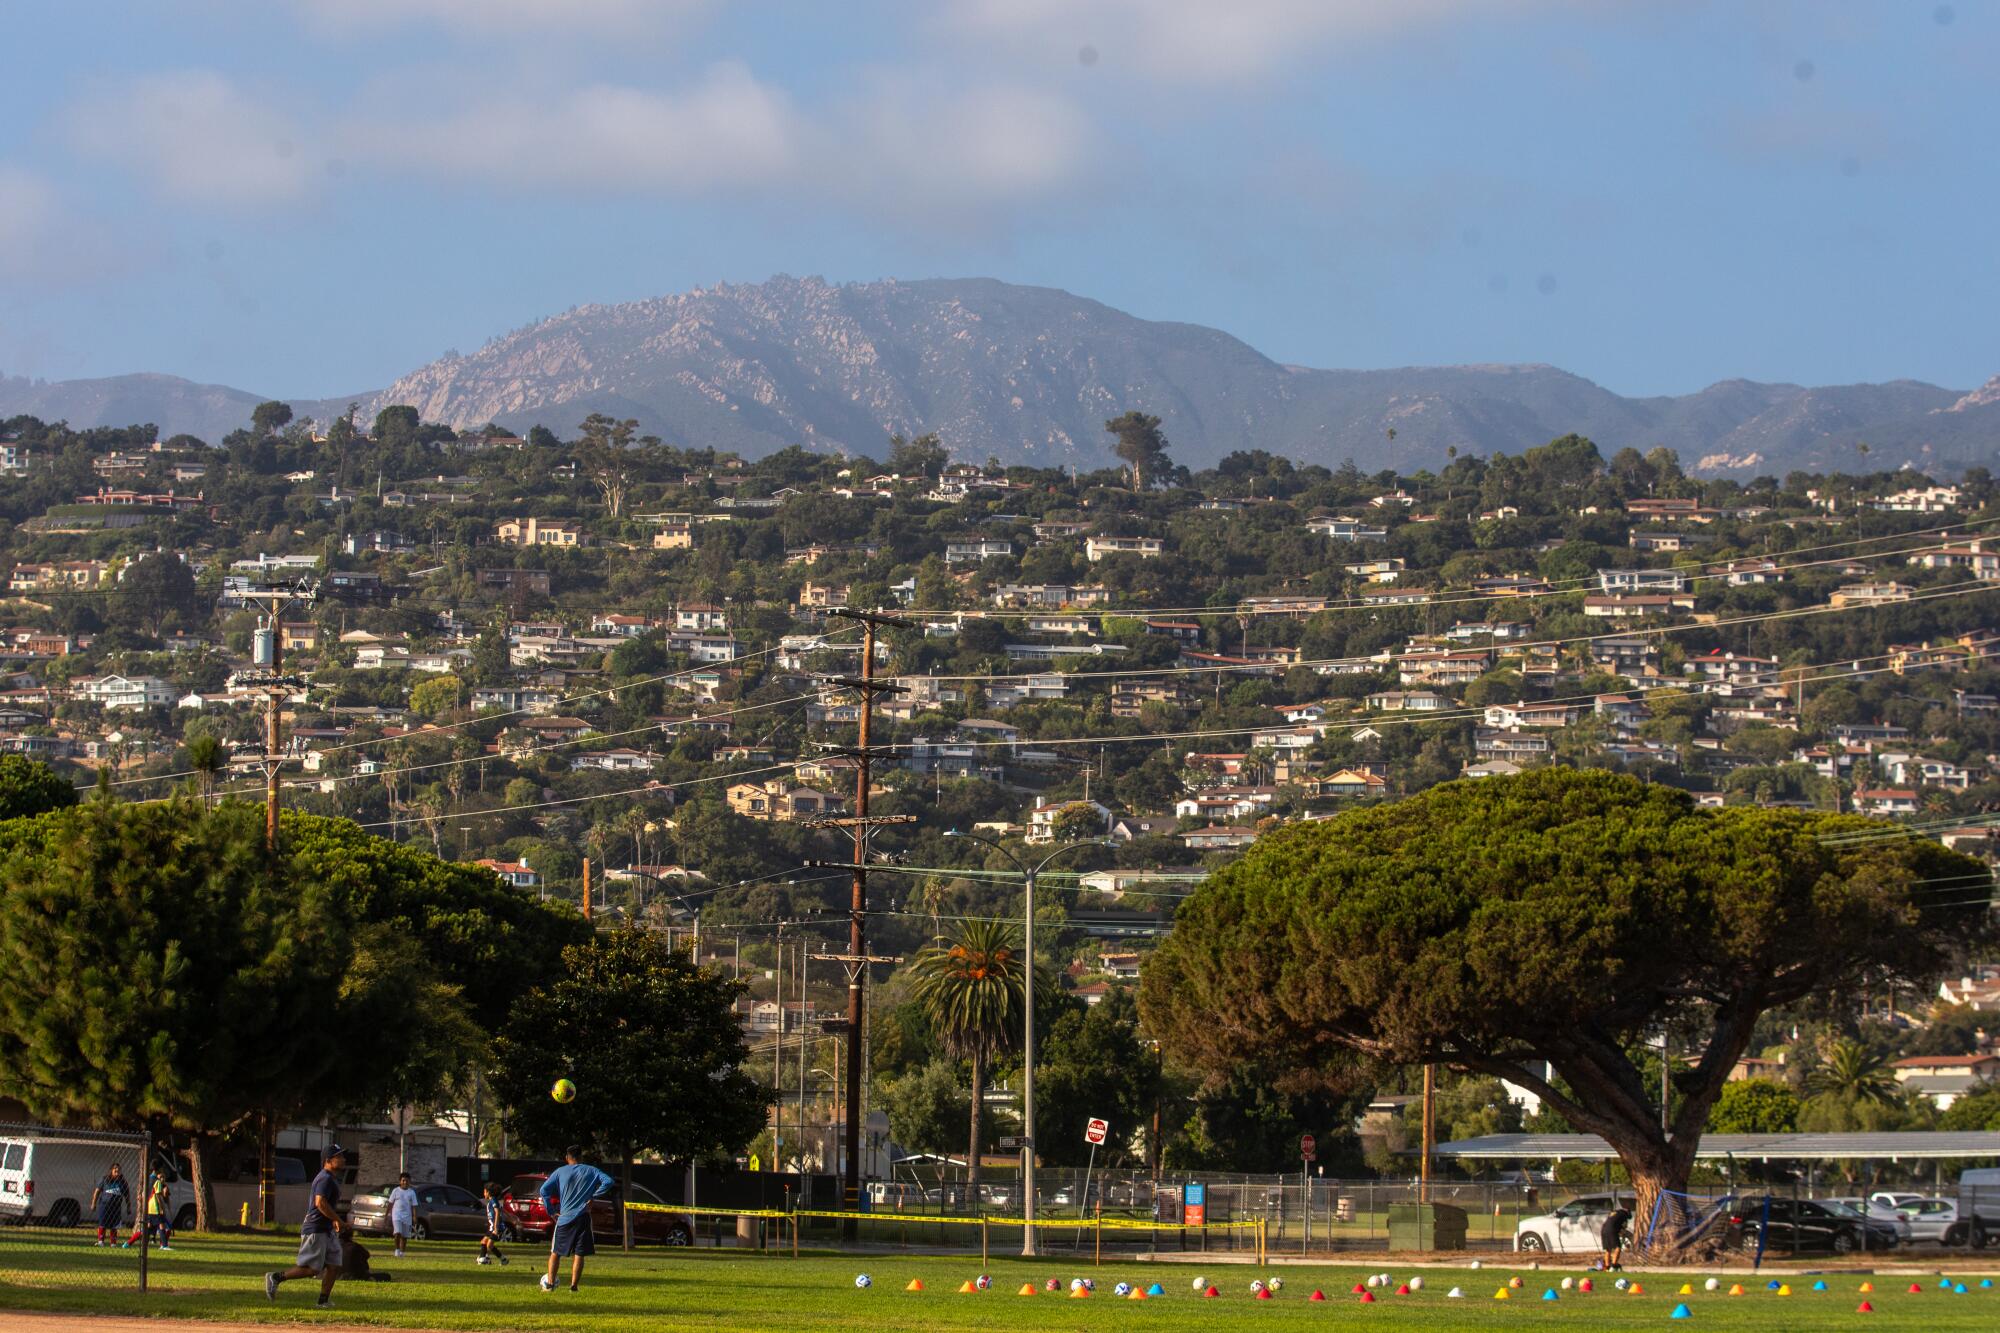 Soccer players practice in Ortega Park in Santa Barbara.